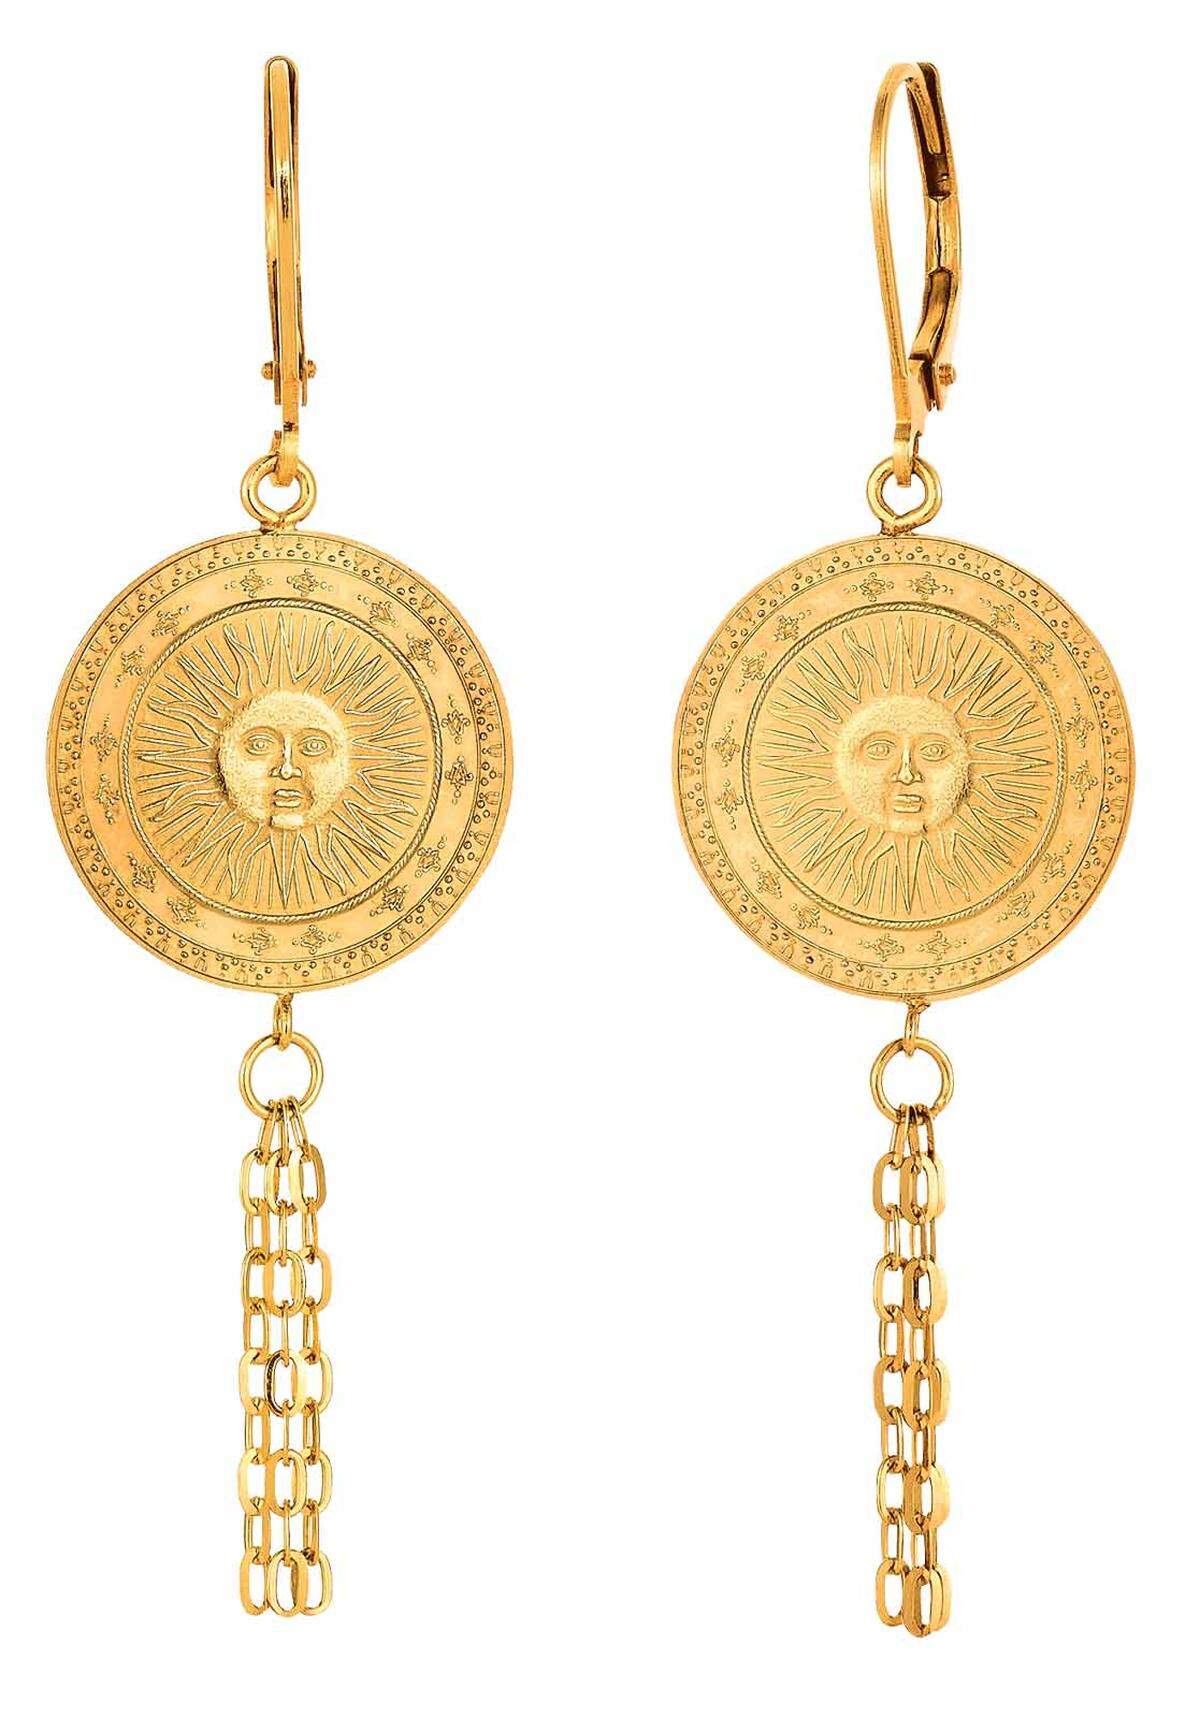 Für die Kollektion "Wachgeküsst" kooperierte die Münze Österreich mit Dorotheum Juwelier. Das Sonnenmotiv dieser Ohrgehänge beruht auf einem alten Stempel.